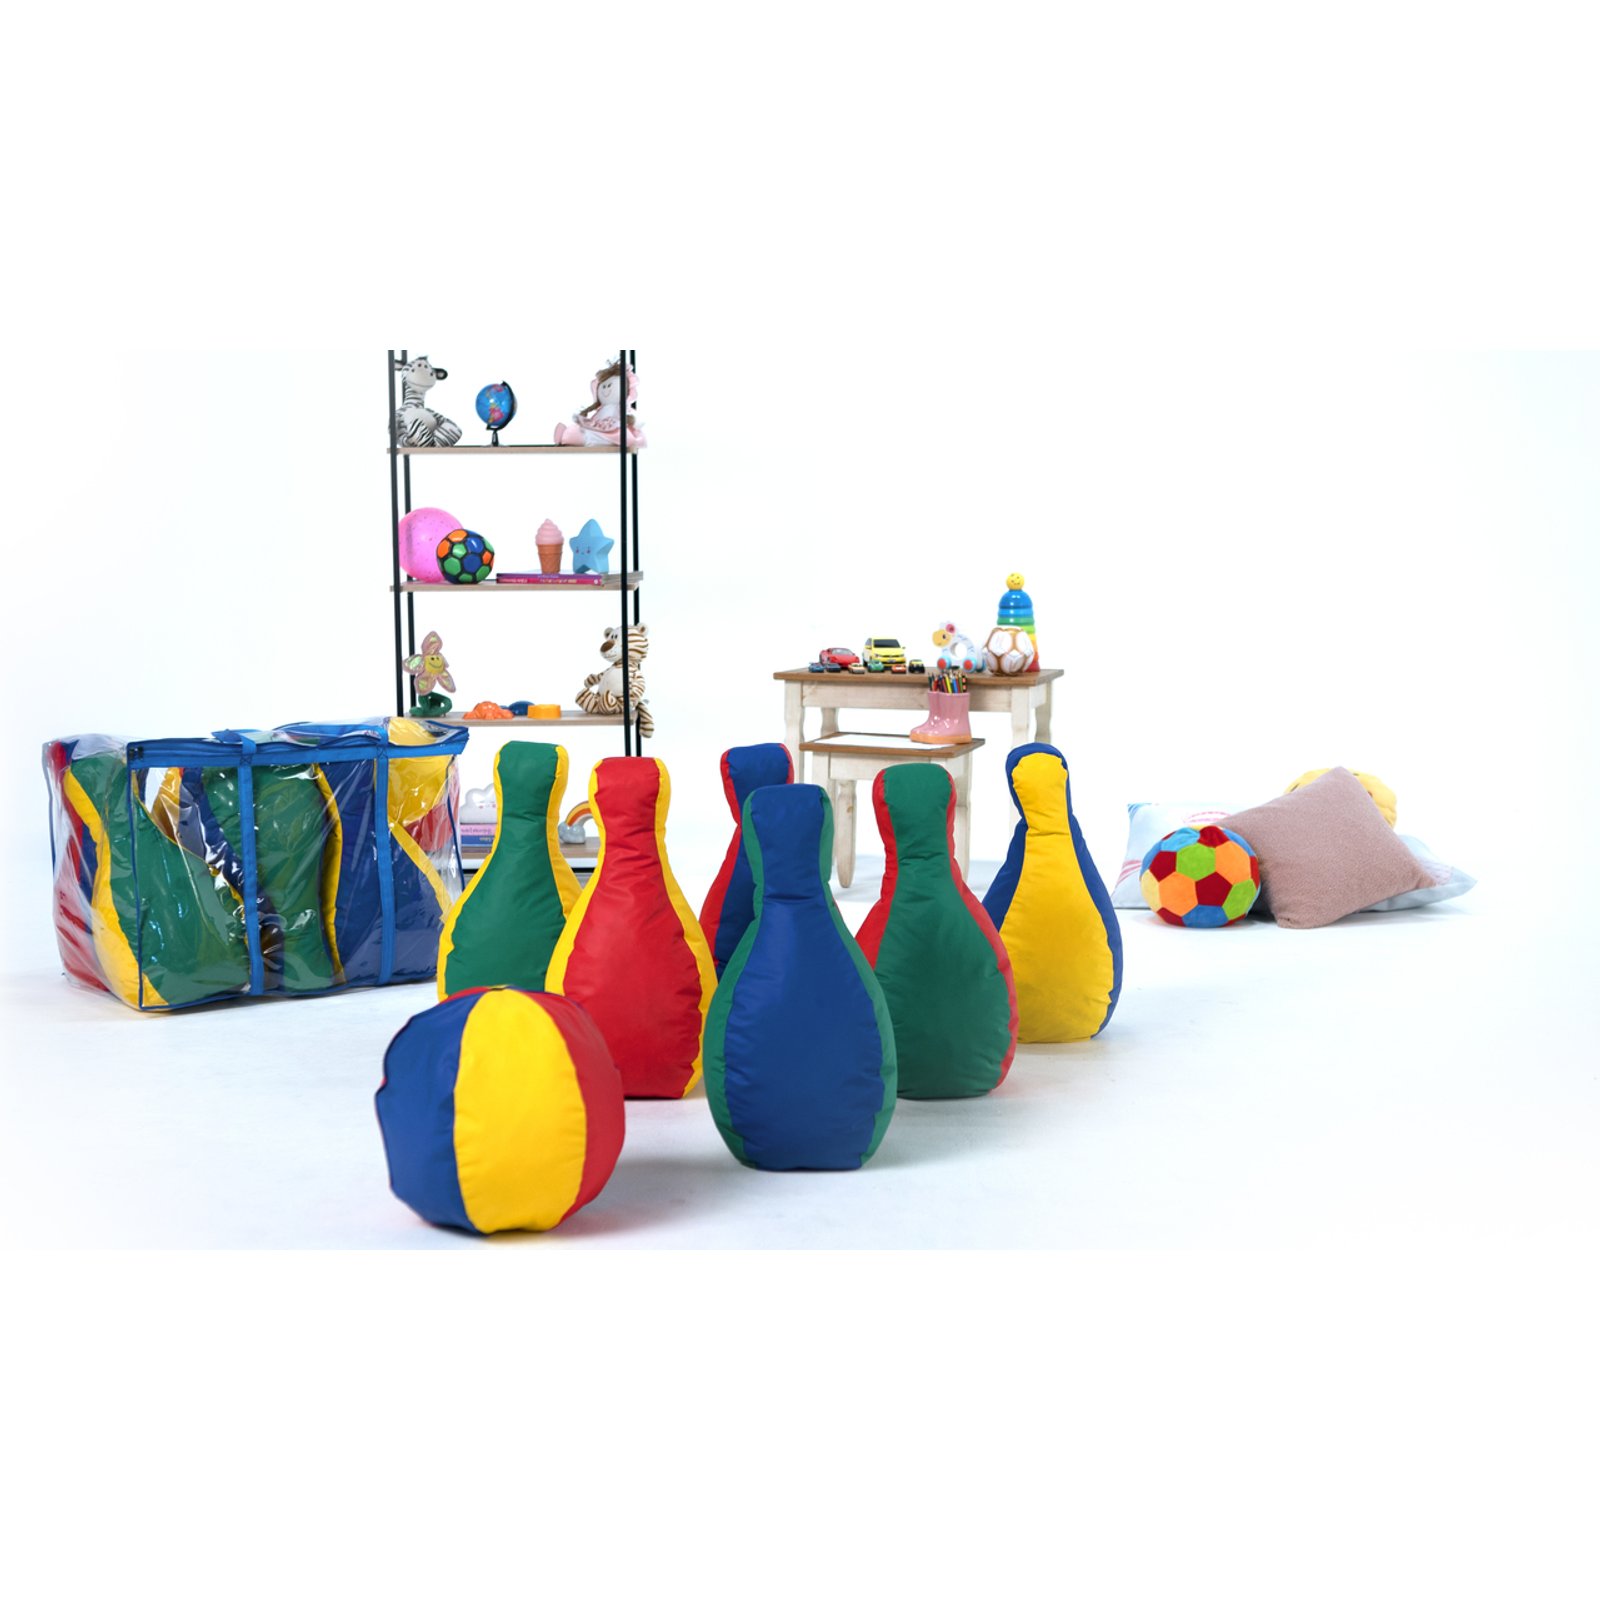 Jogo Boliche Gigante 6 Pinos completo - Lider Brinquedos - Tem Tem Digital  - Brinquedos e Papelaria, aqui tem!